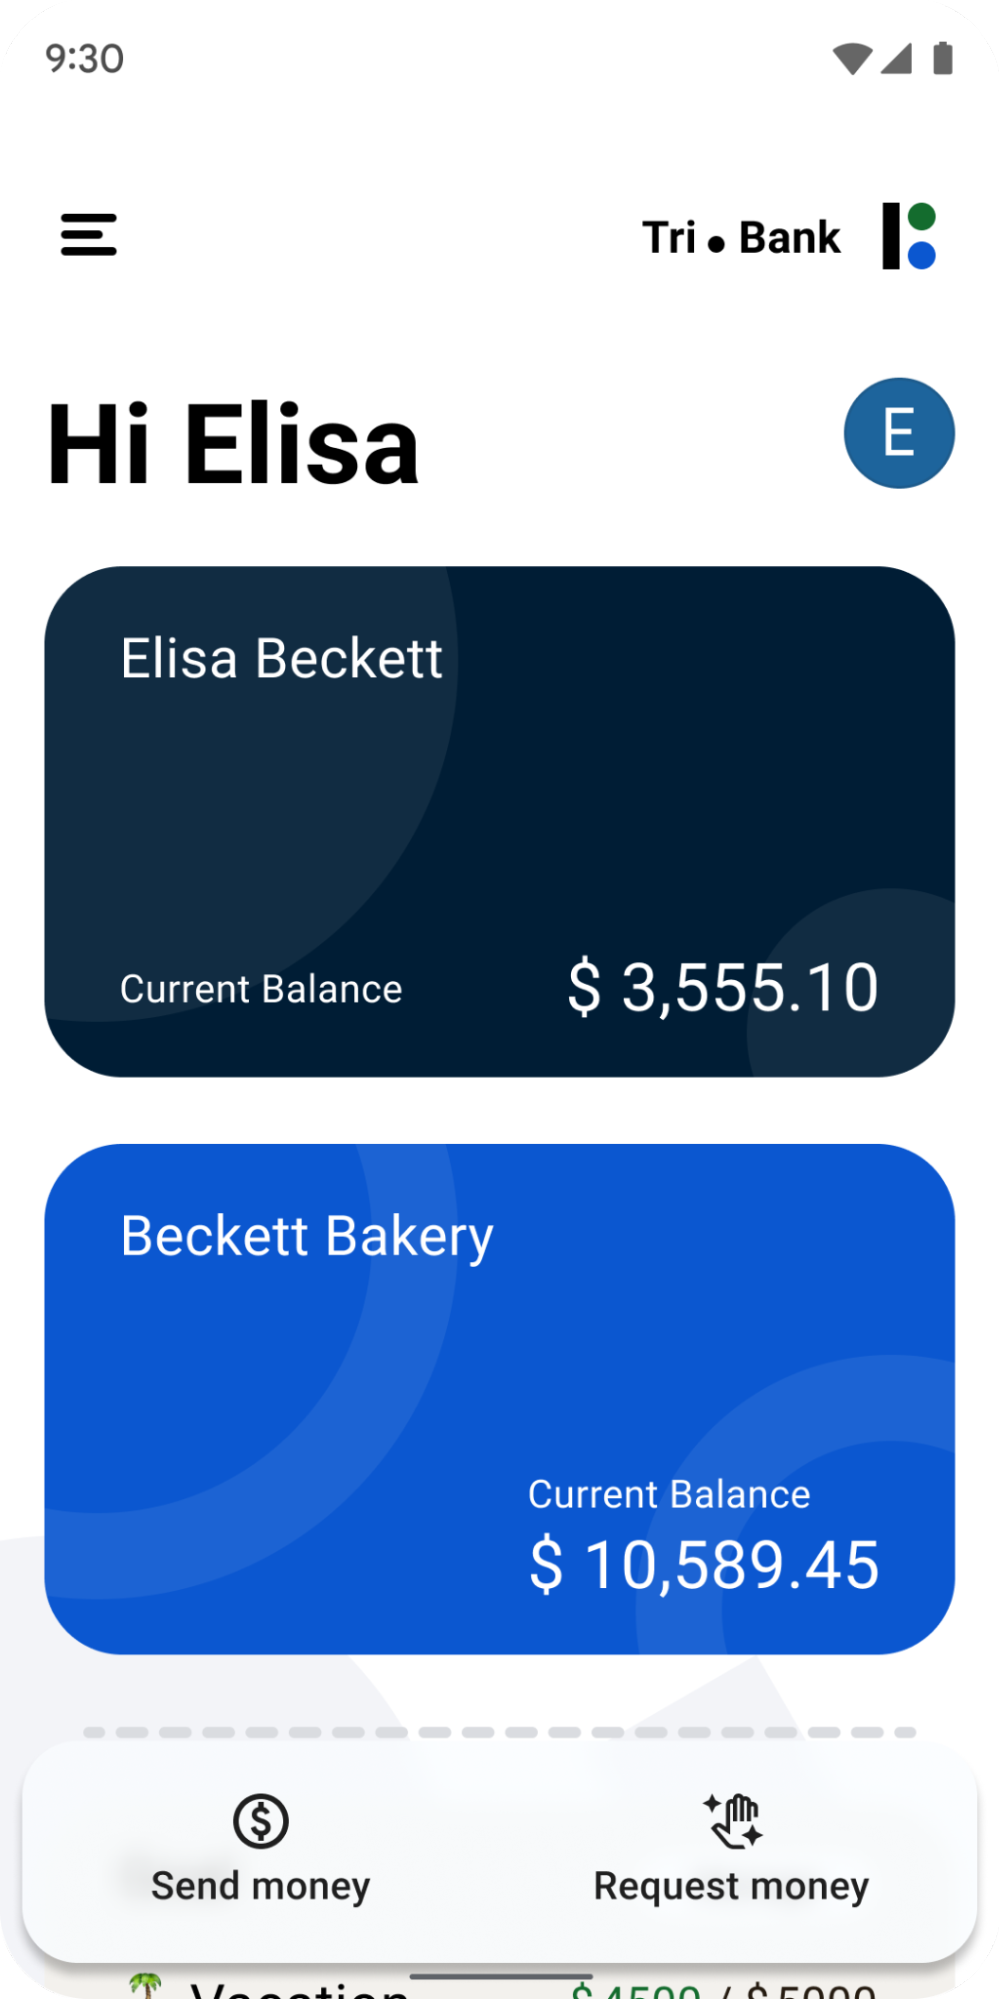 Captura de tela do app de um banco para dispositivos móveis